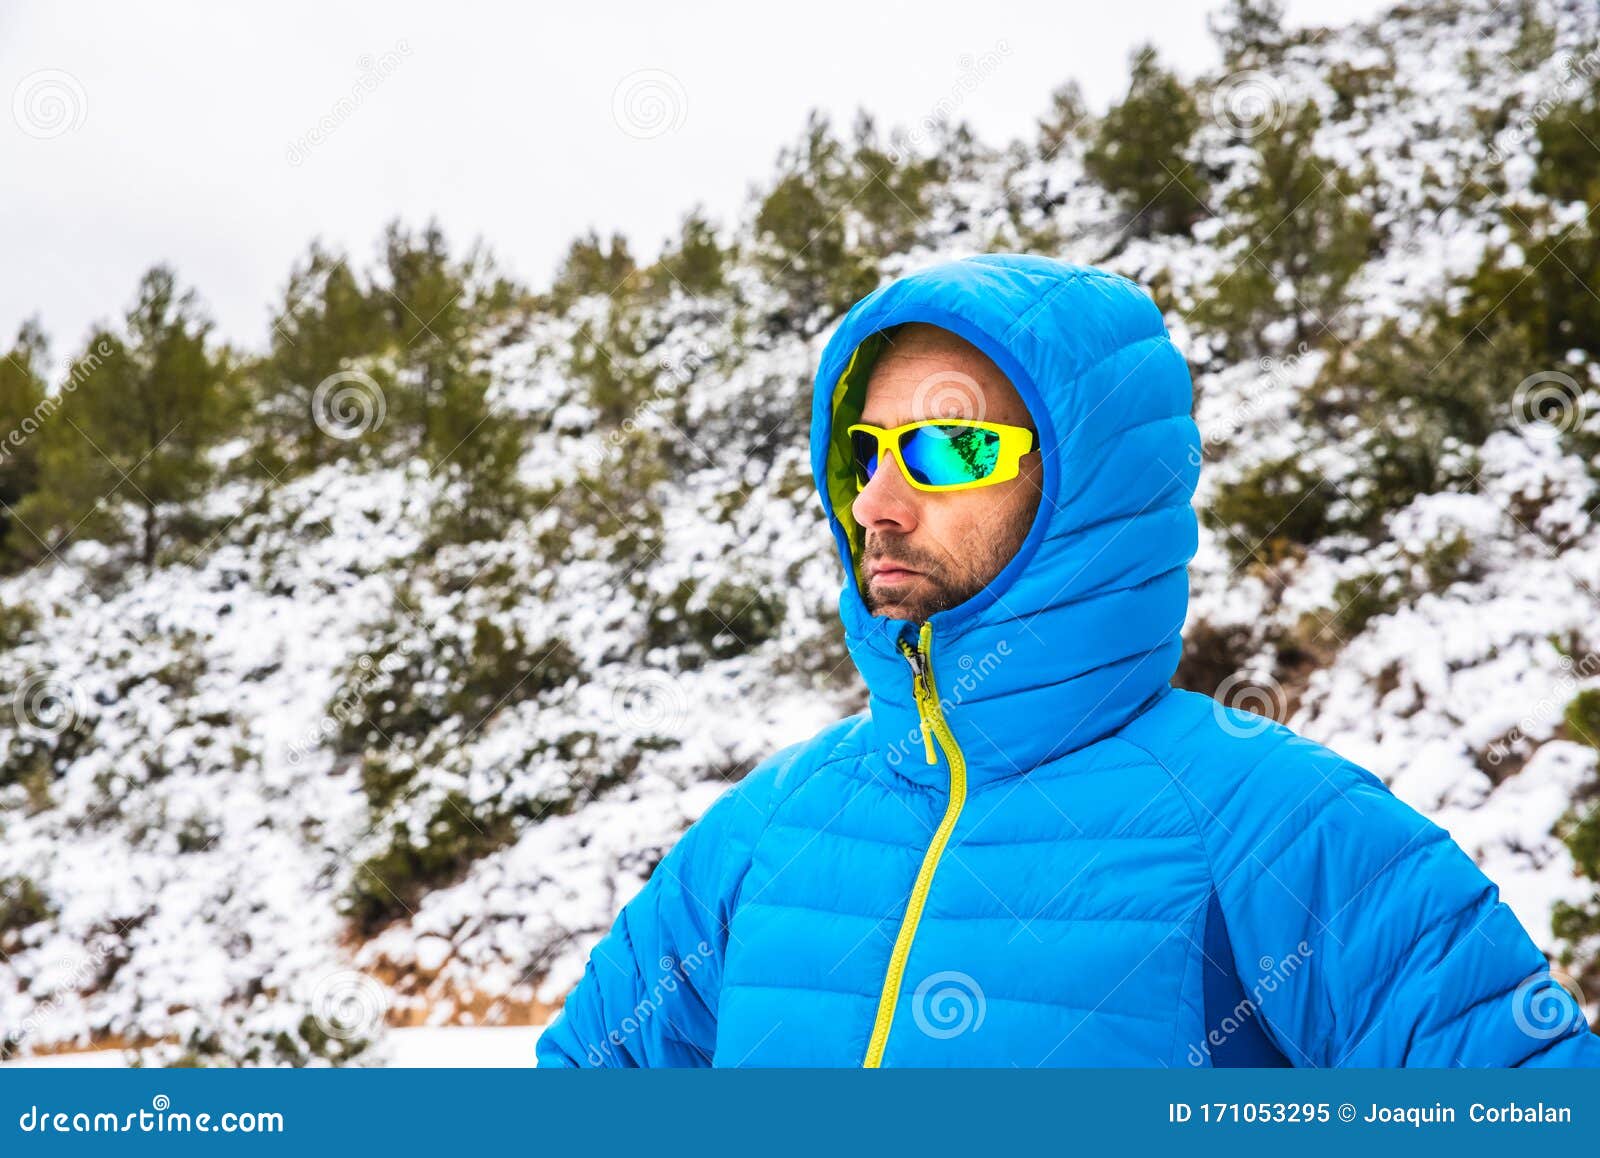 Mitones cuidadosamente Sumergir Hombre De Montaña Con Abrigo Azul Y Gafas De Sol Caminando En Un Camino De  Montaña Nevado En Su Tiempo Libre Imagen de archivo - Imagen de camino,  excursionista: 171053295